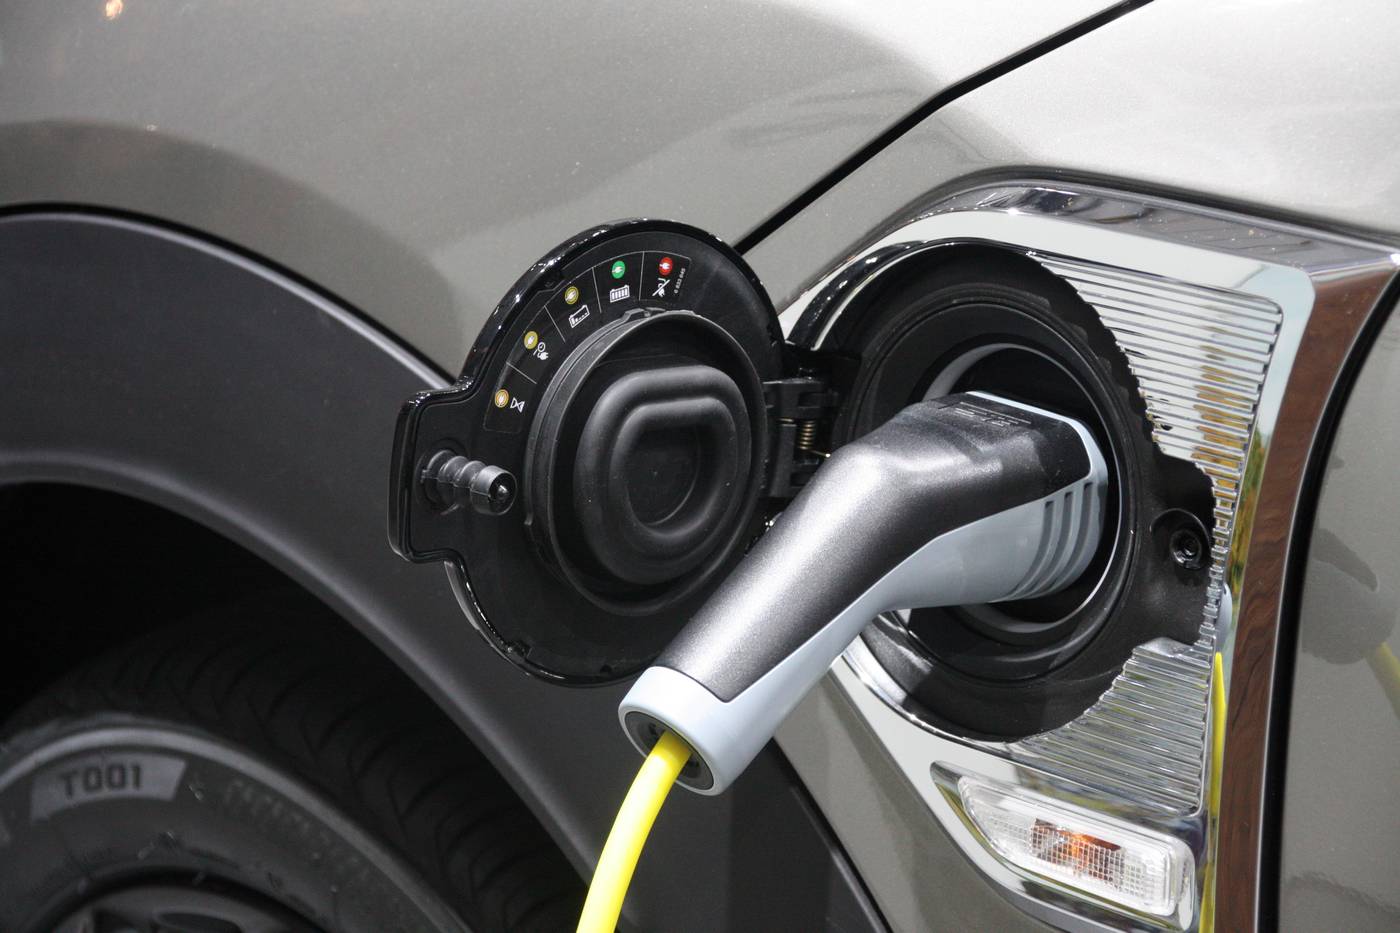 Europe : des crédits carbone pour la voiture électrique